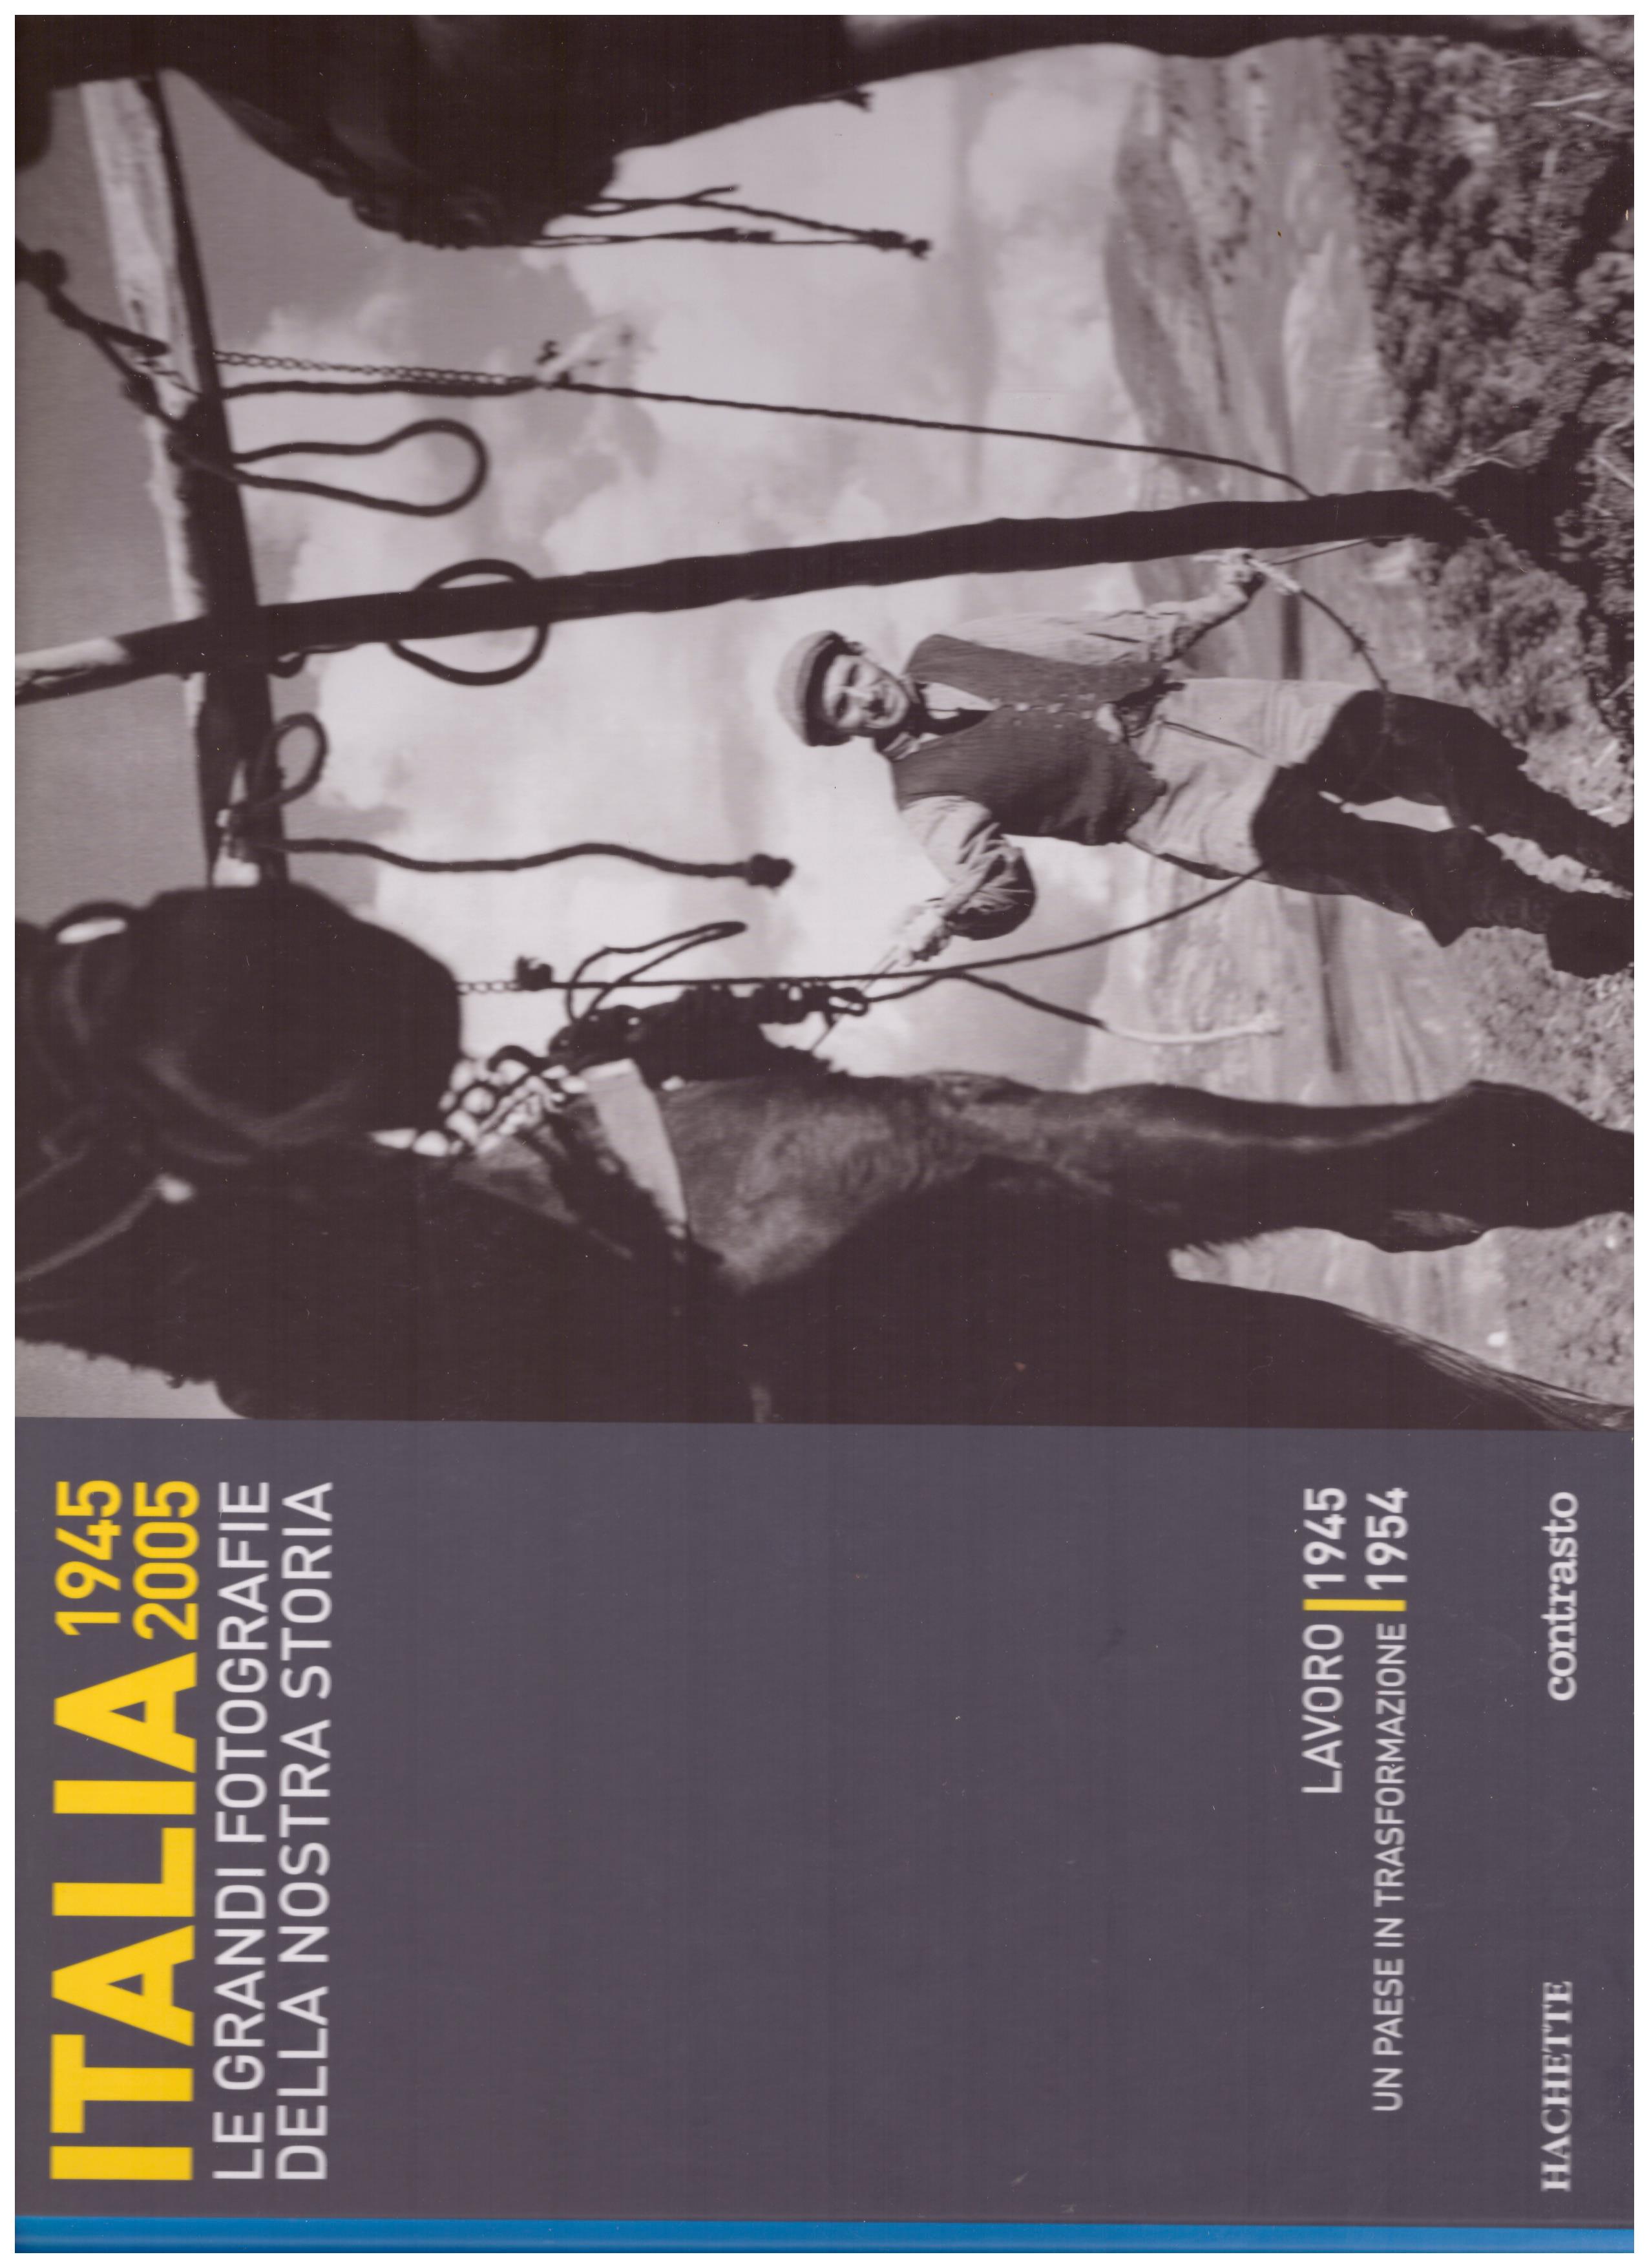 Titolo: Italia 1945-2005 le grandi fotografie della nostra storia, lavoro 1945 ,un paese in trasformazione 1954  Autore : AA.VV.   Editore: hachette, 2006